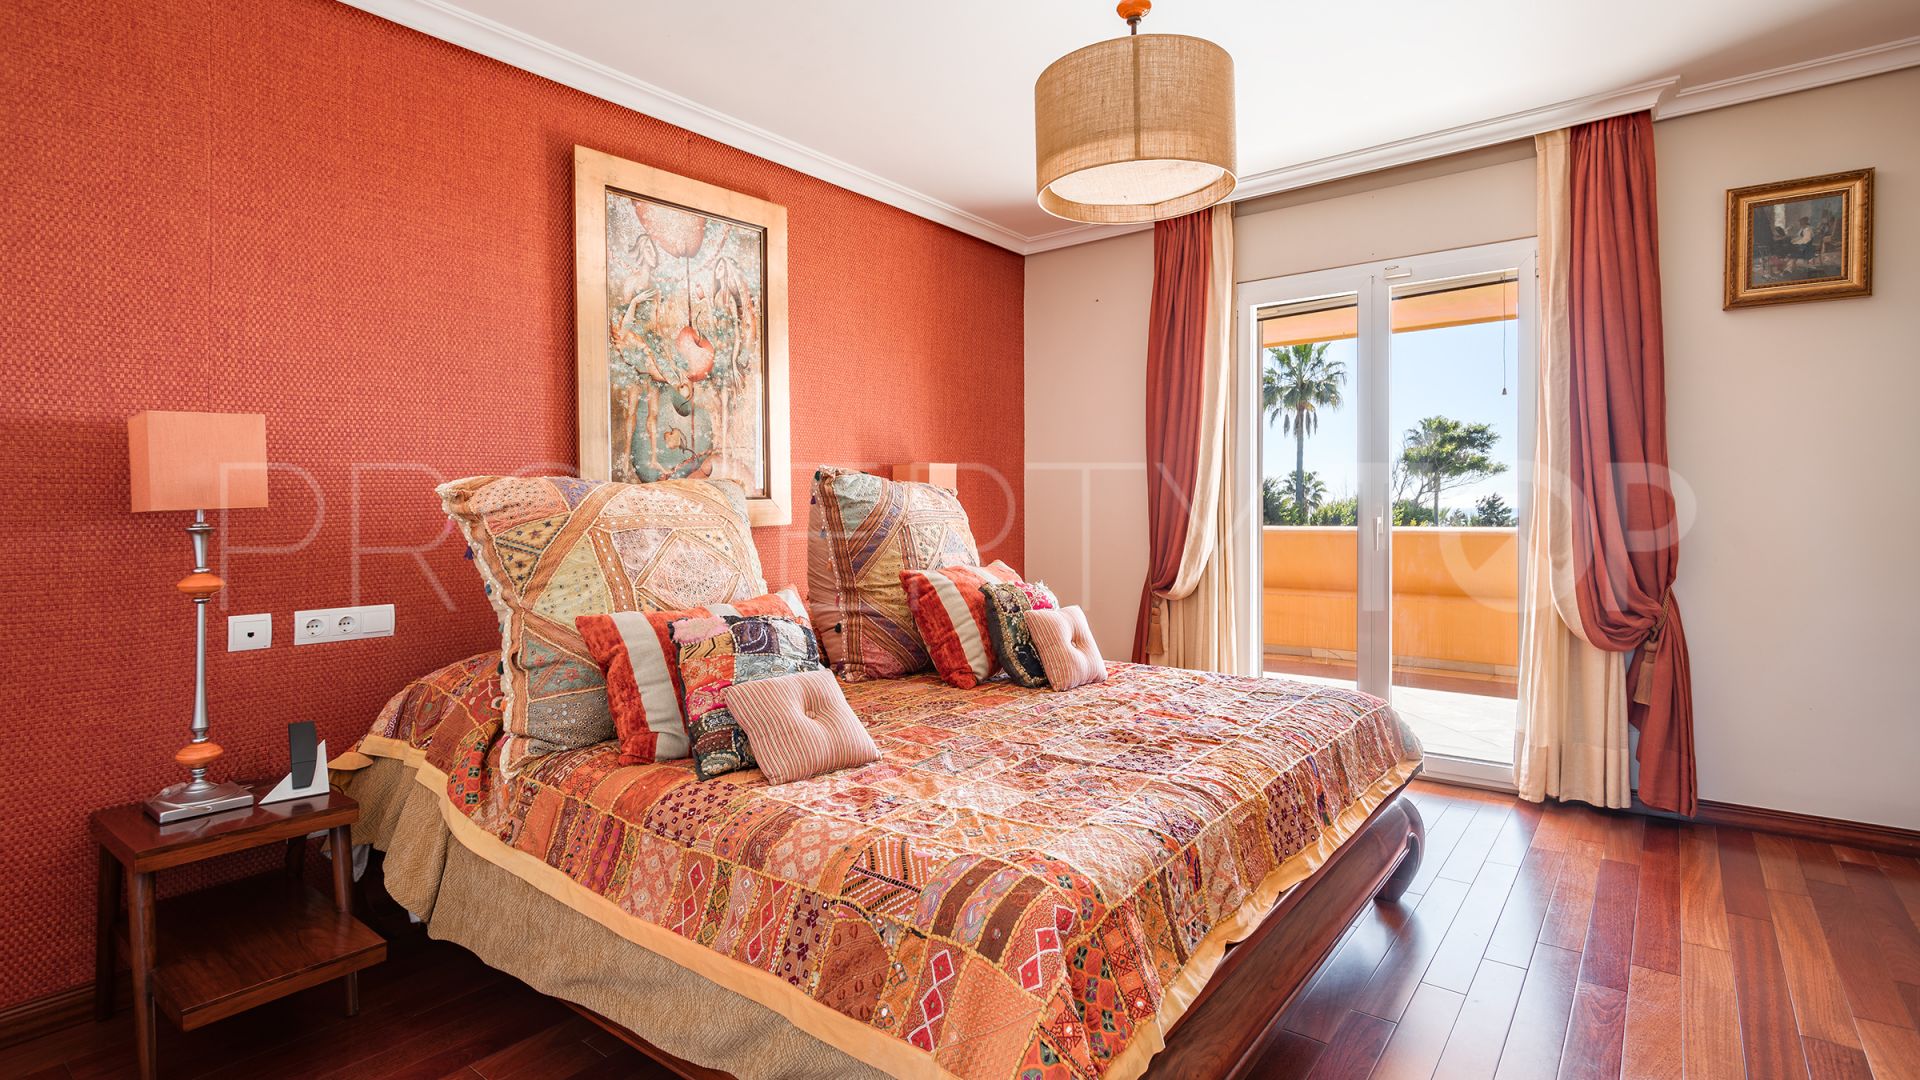 8 bedrooms Hacienda Beach villa for sale